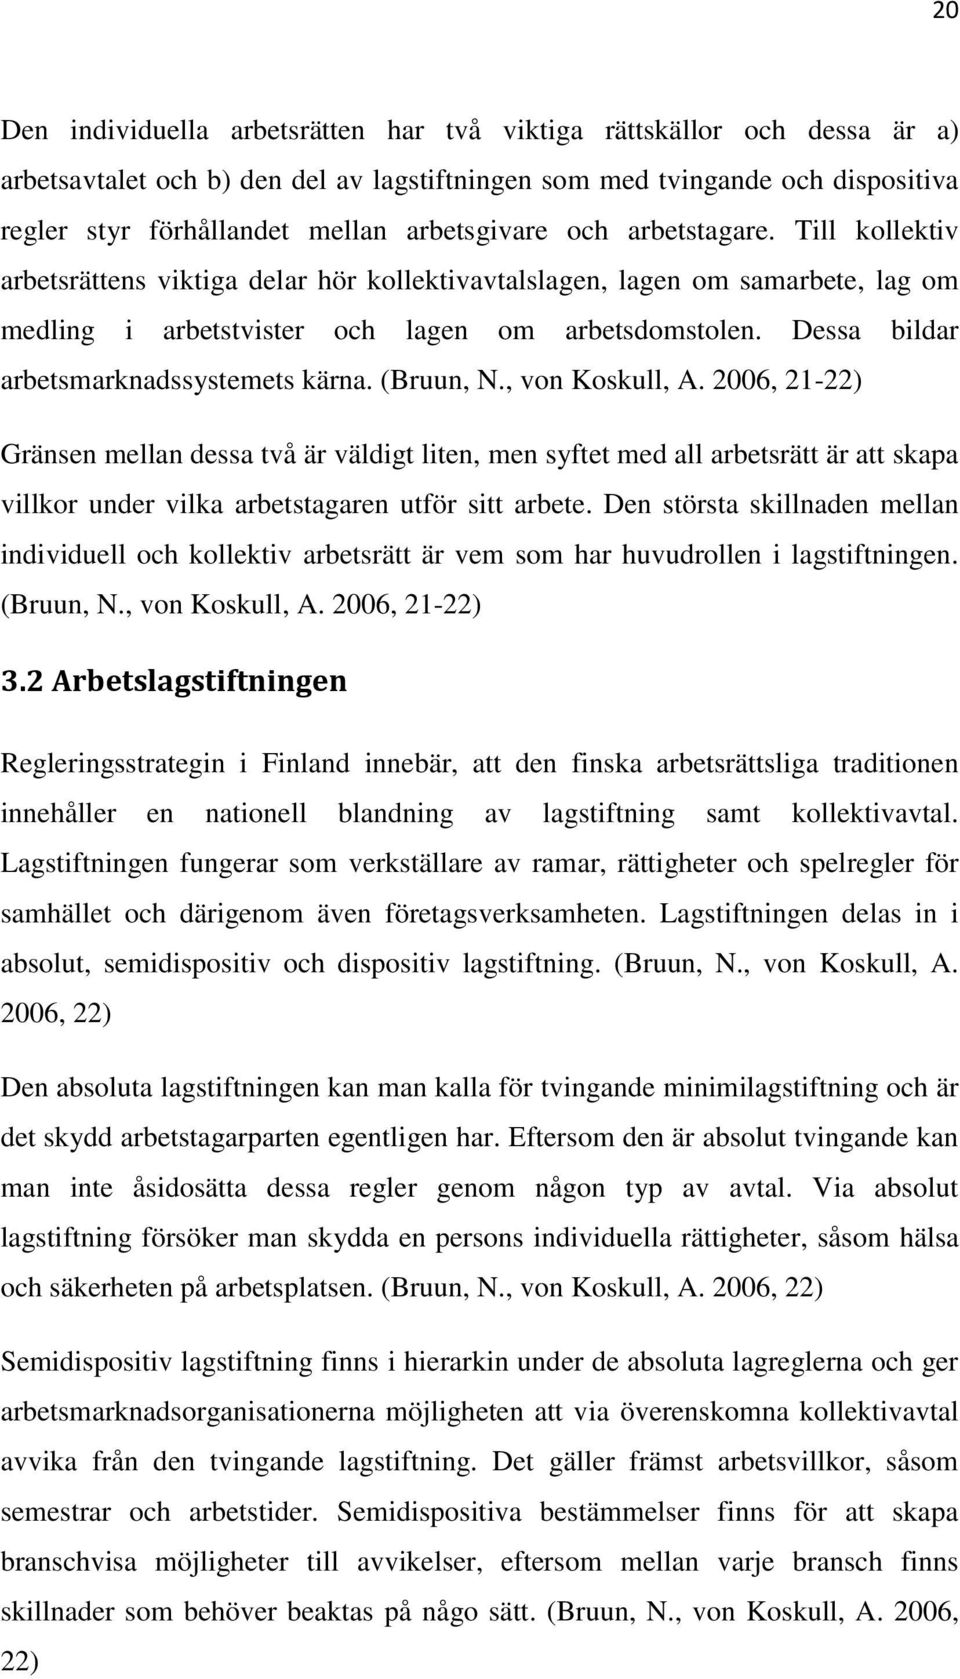 Dessa bildar arbetsmarknadssystemets kärna. (Bruun, N., von Koskull, A.